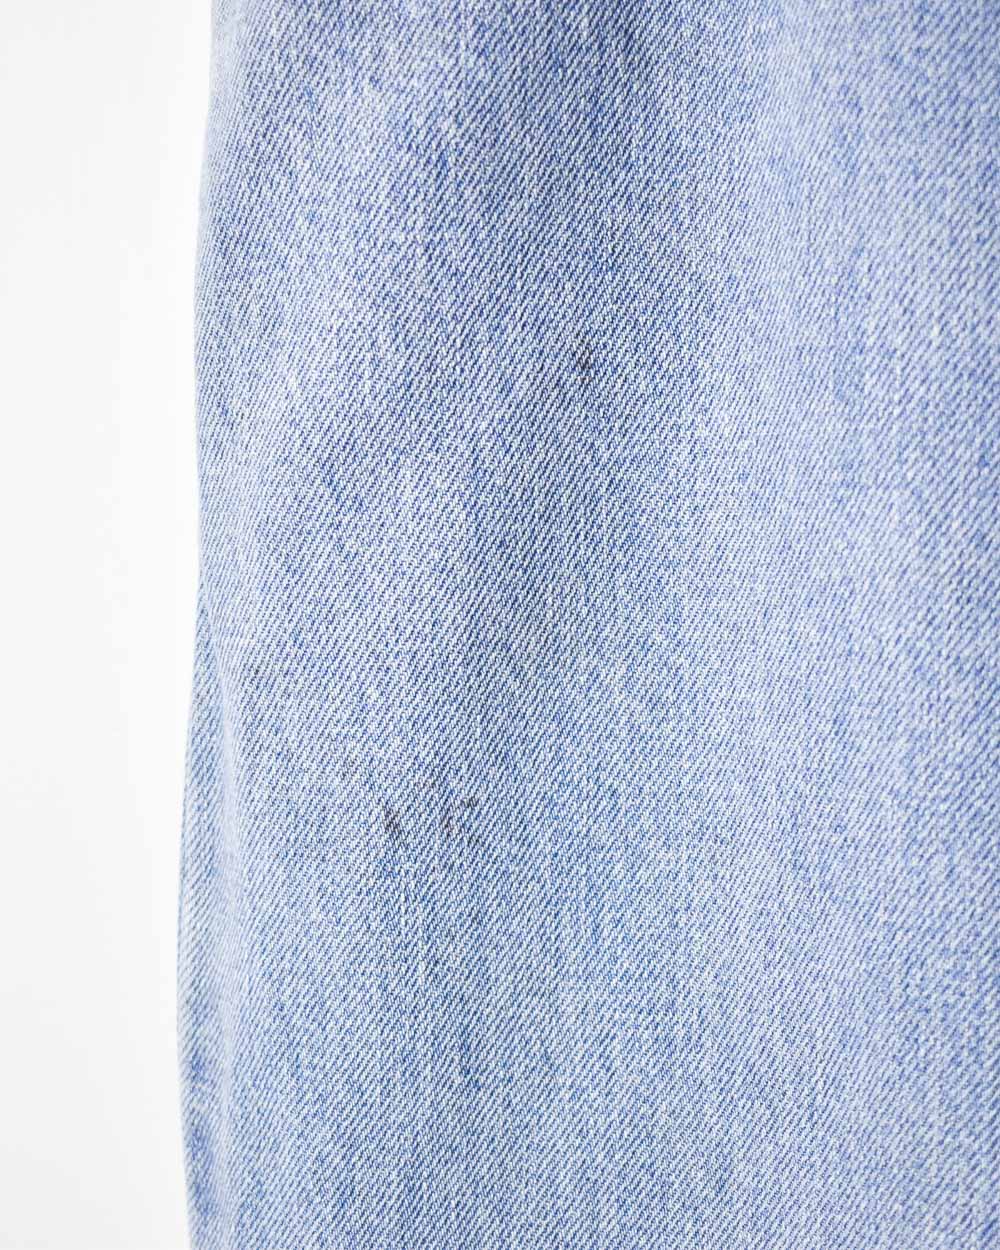 Blue Levi's Jeans - W36 L28